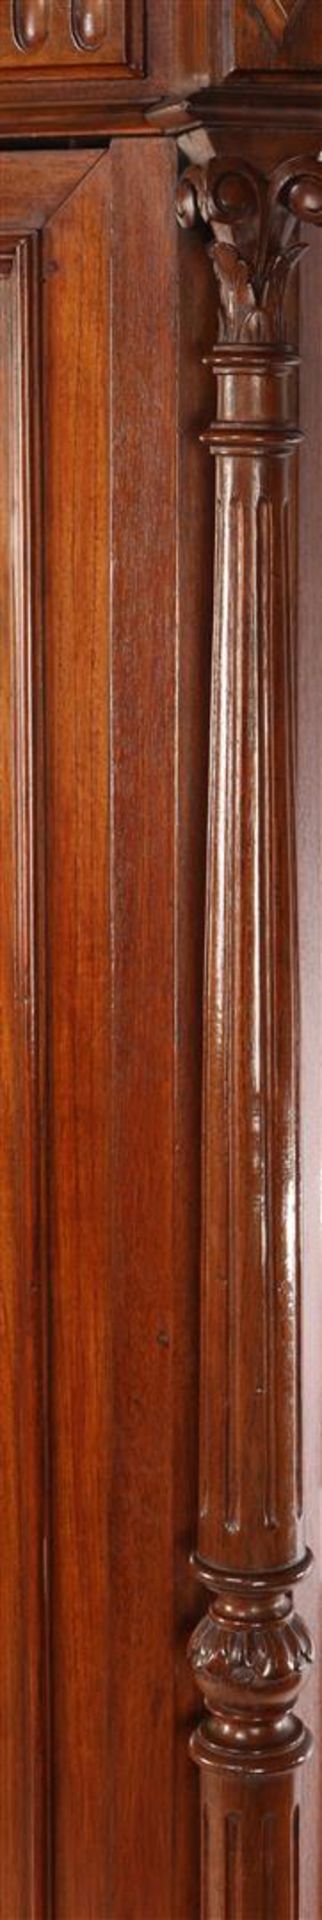 Walnut veneer 1-door display cabinet - Image 2 of 3